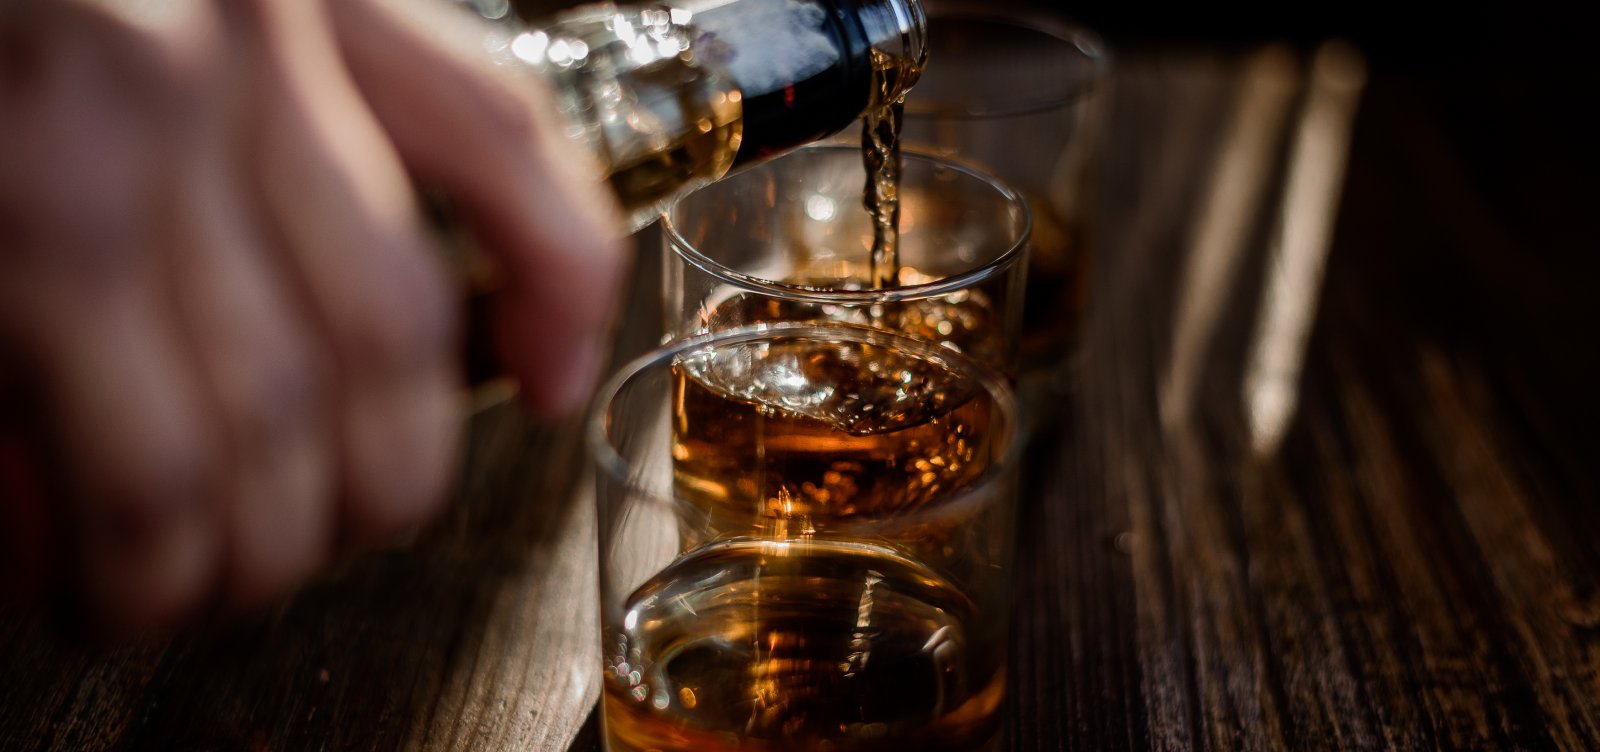 Álcool causa 2,6 milhões de mortes todos os anos no mundo, diz OMS